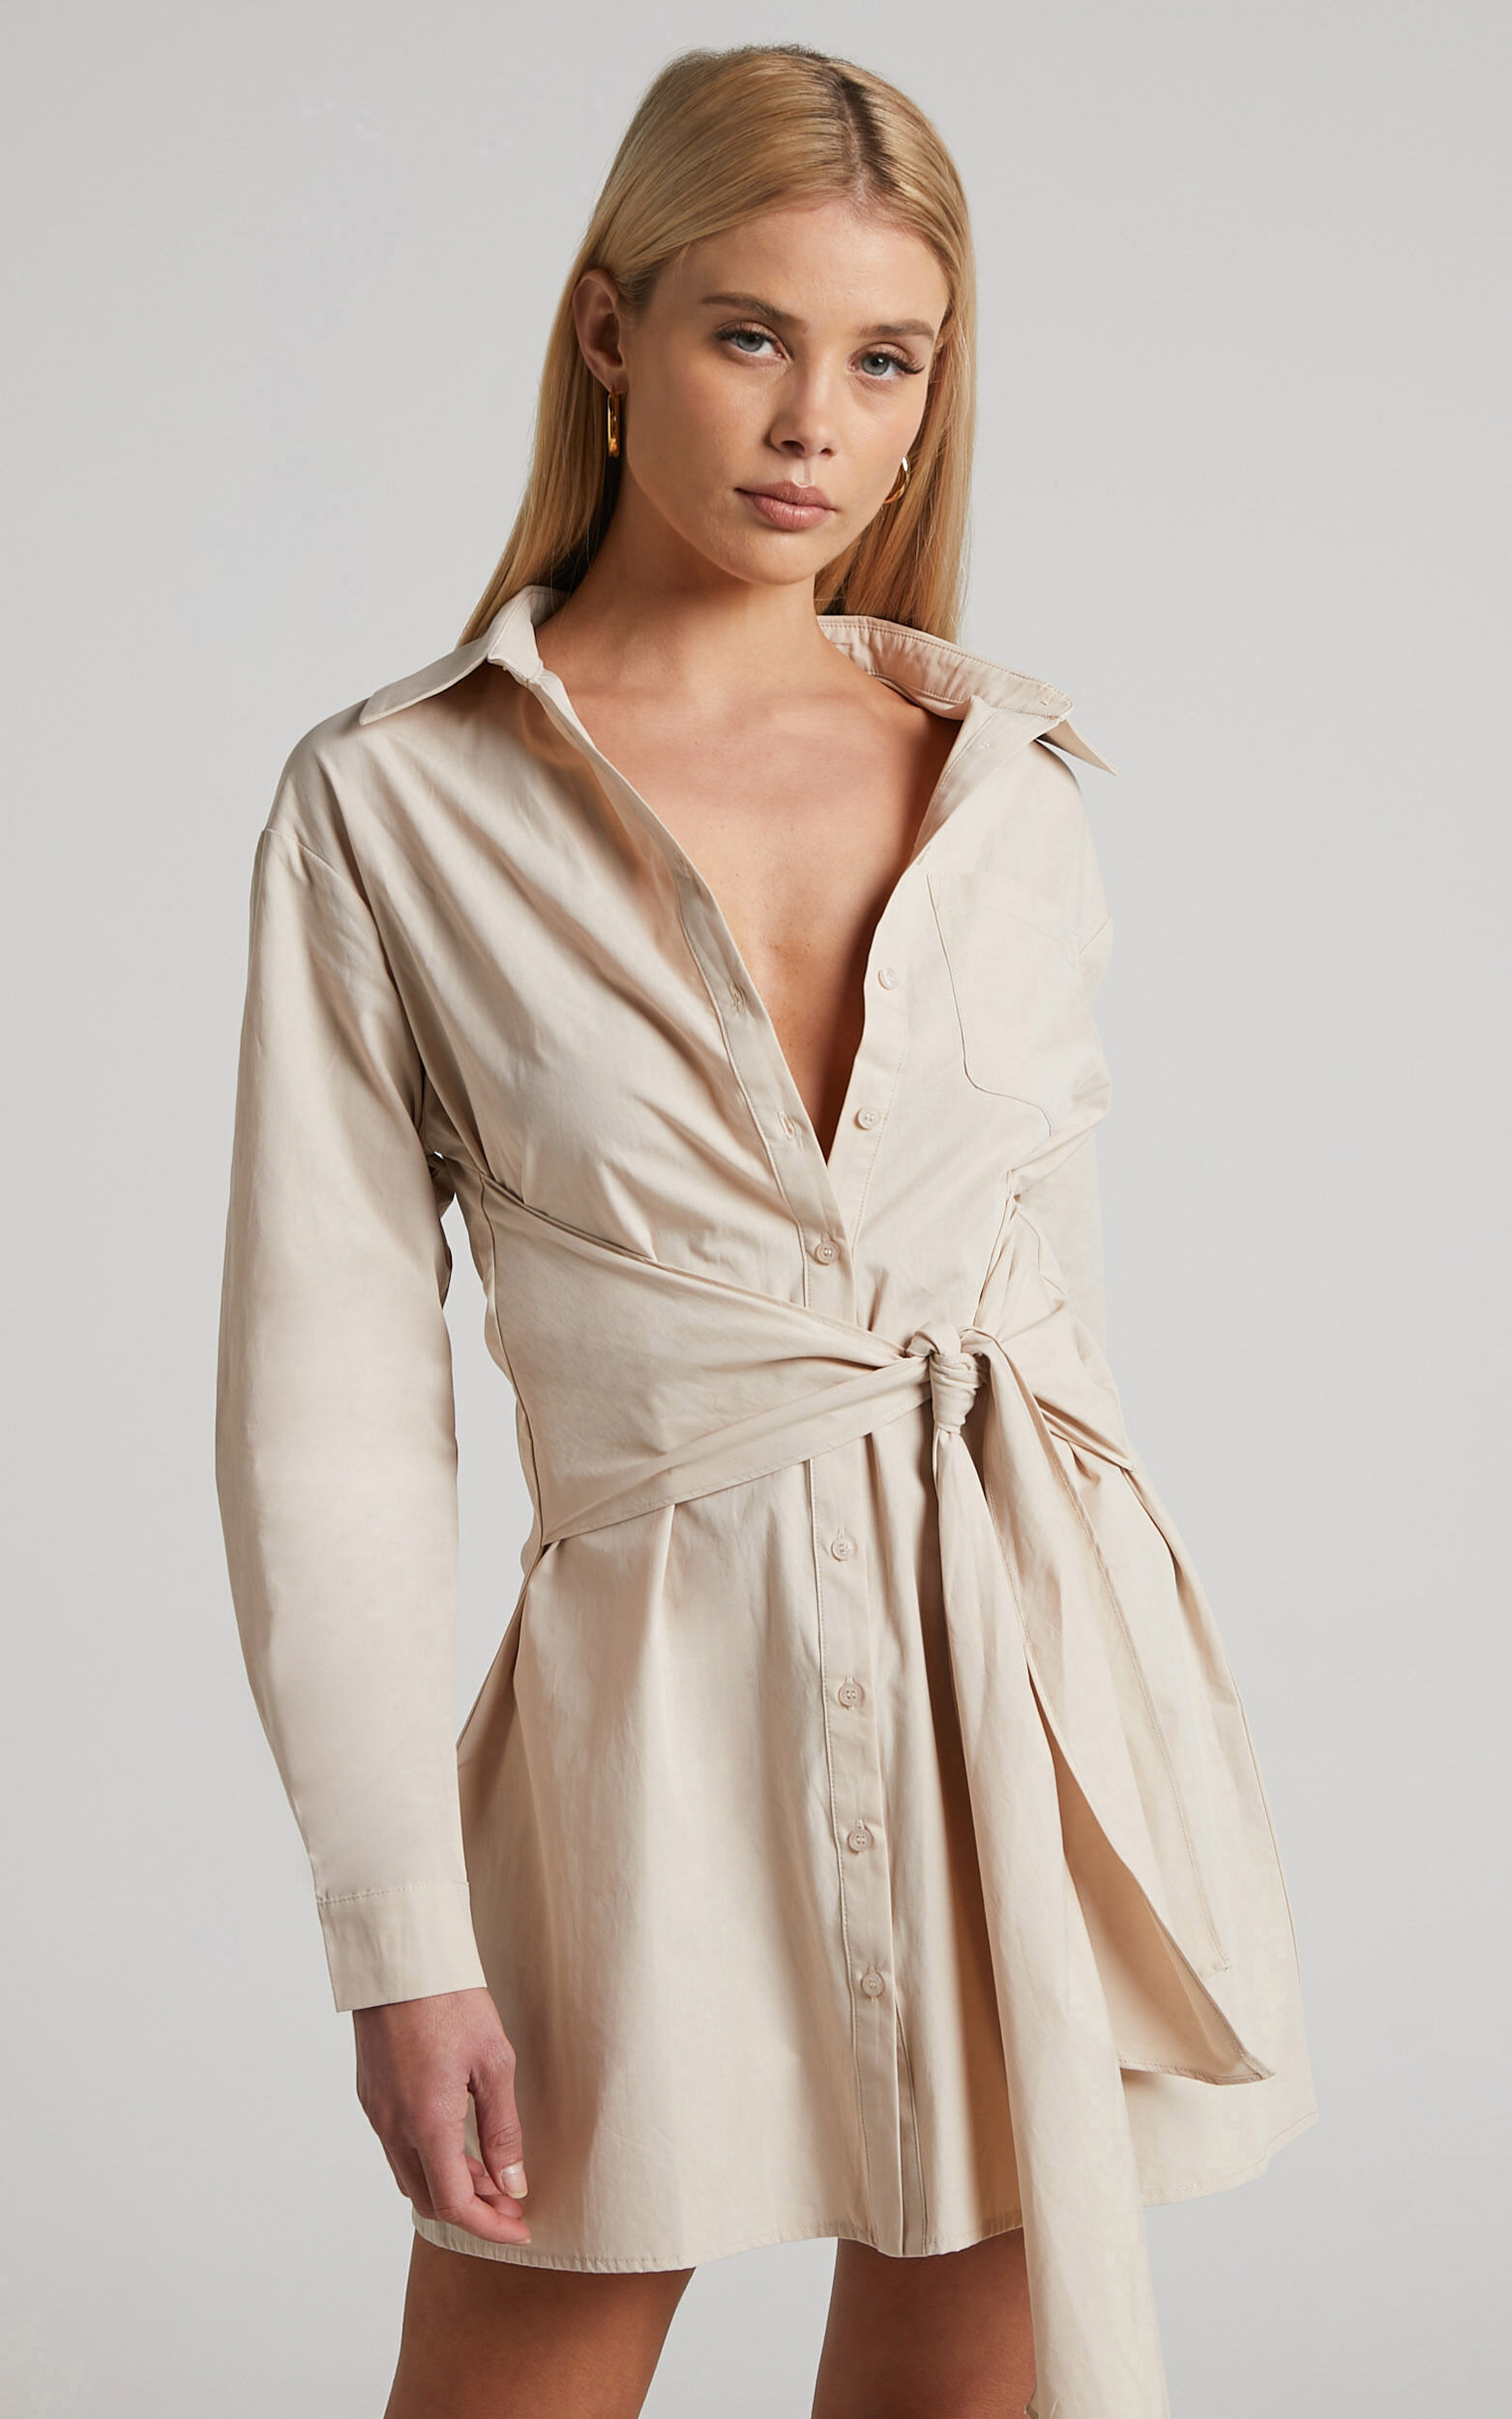 Macie Mini Dress - Tie Front Shirt Dress in Sand - 06, NEU1